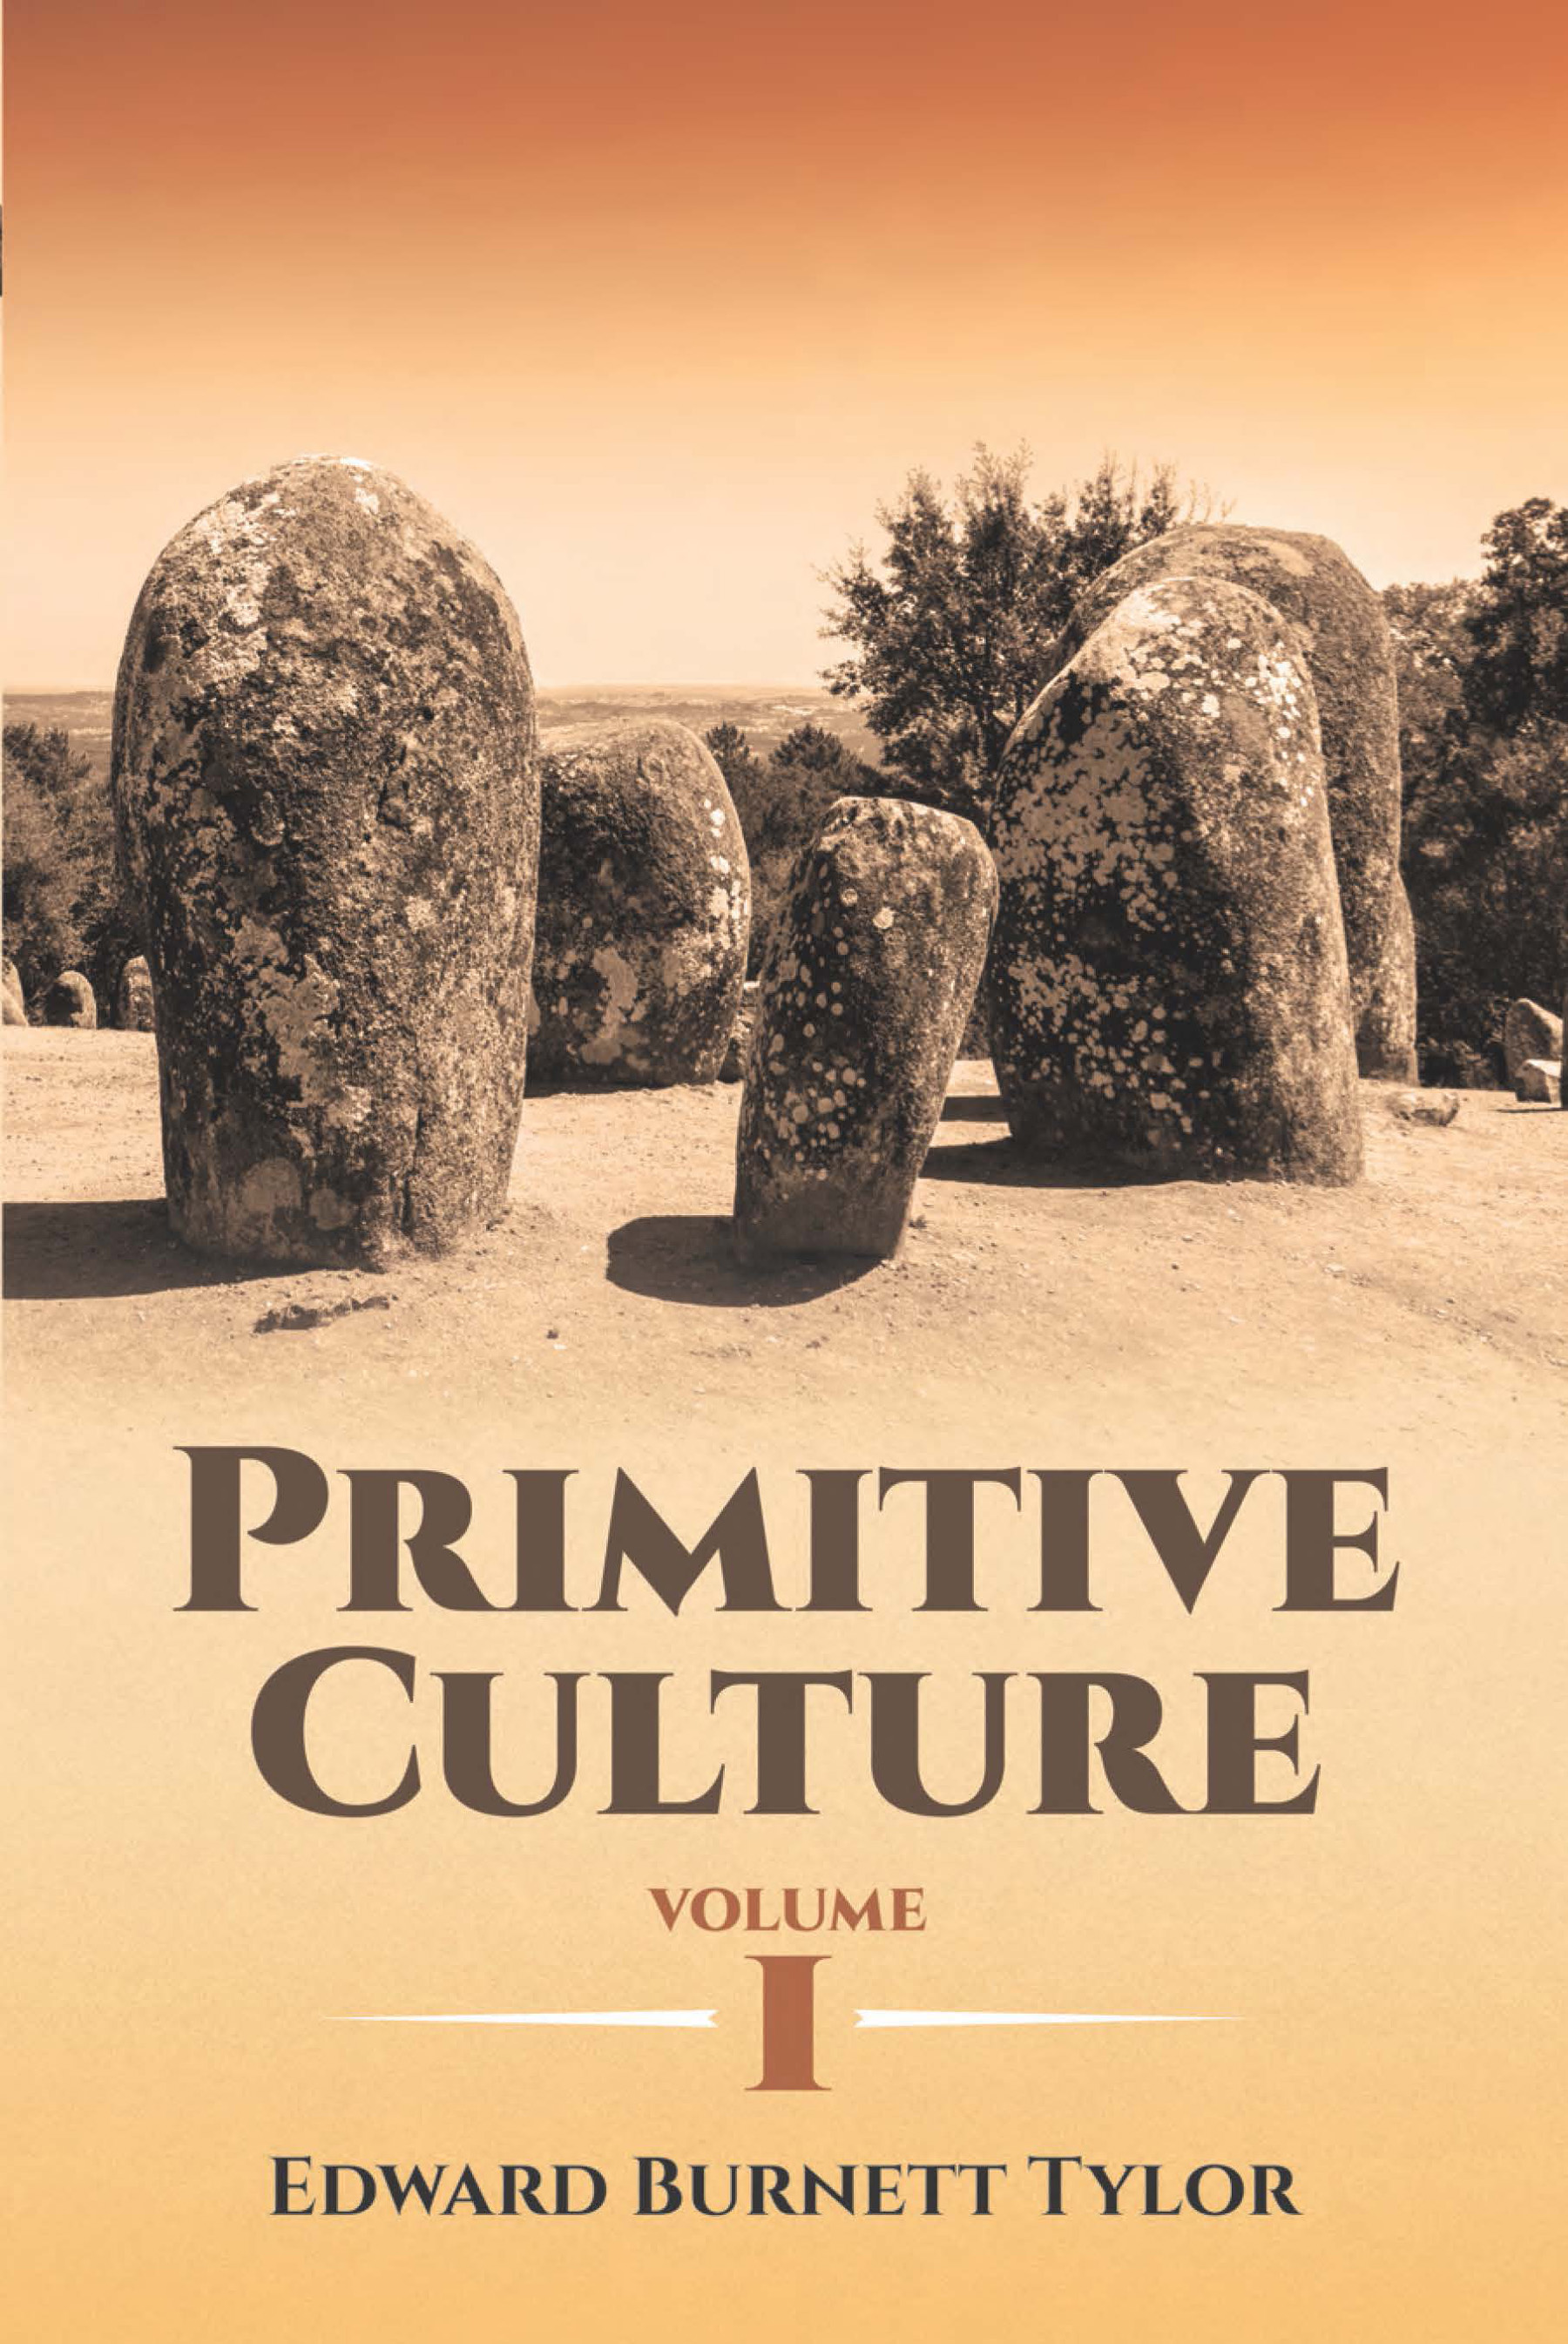 Primitive Culture Volume I - Edward Burnett Tylor,,